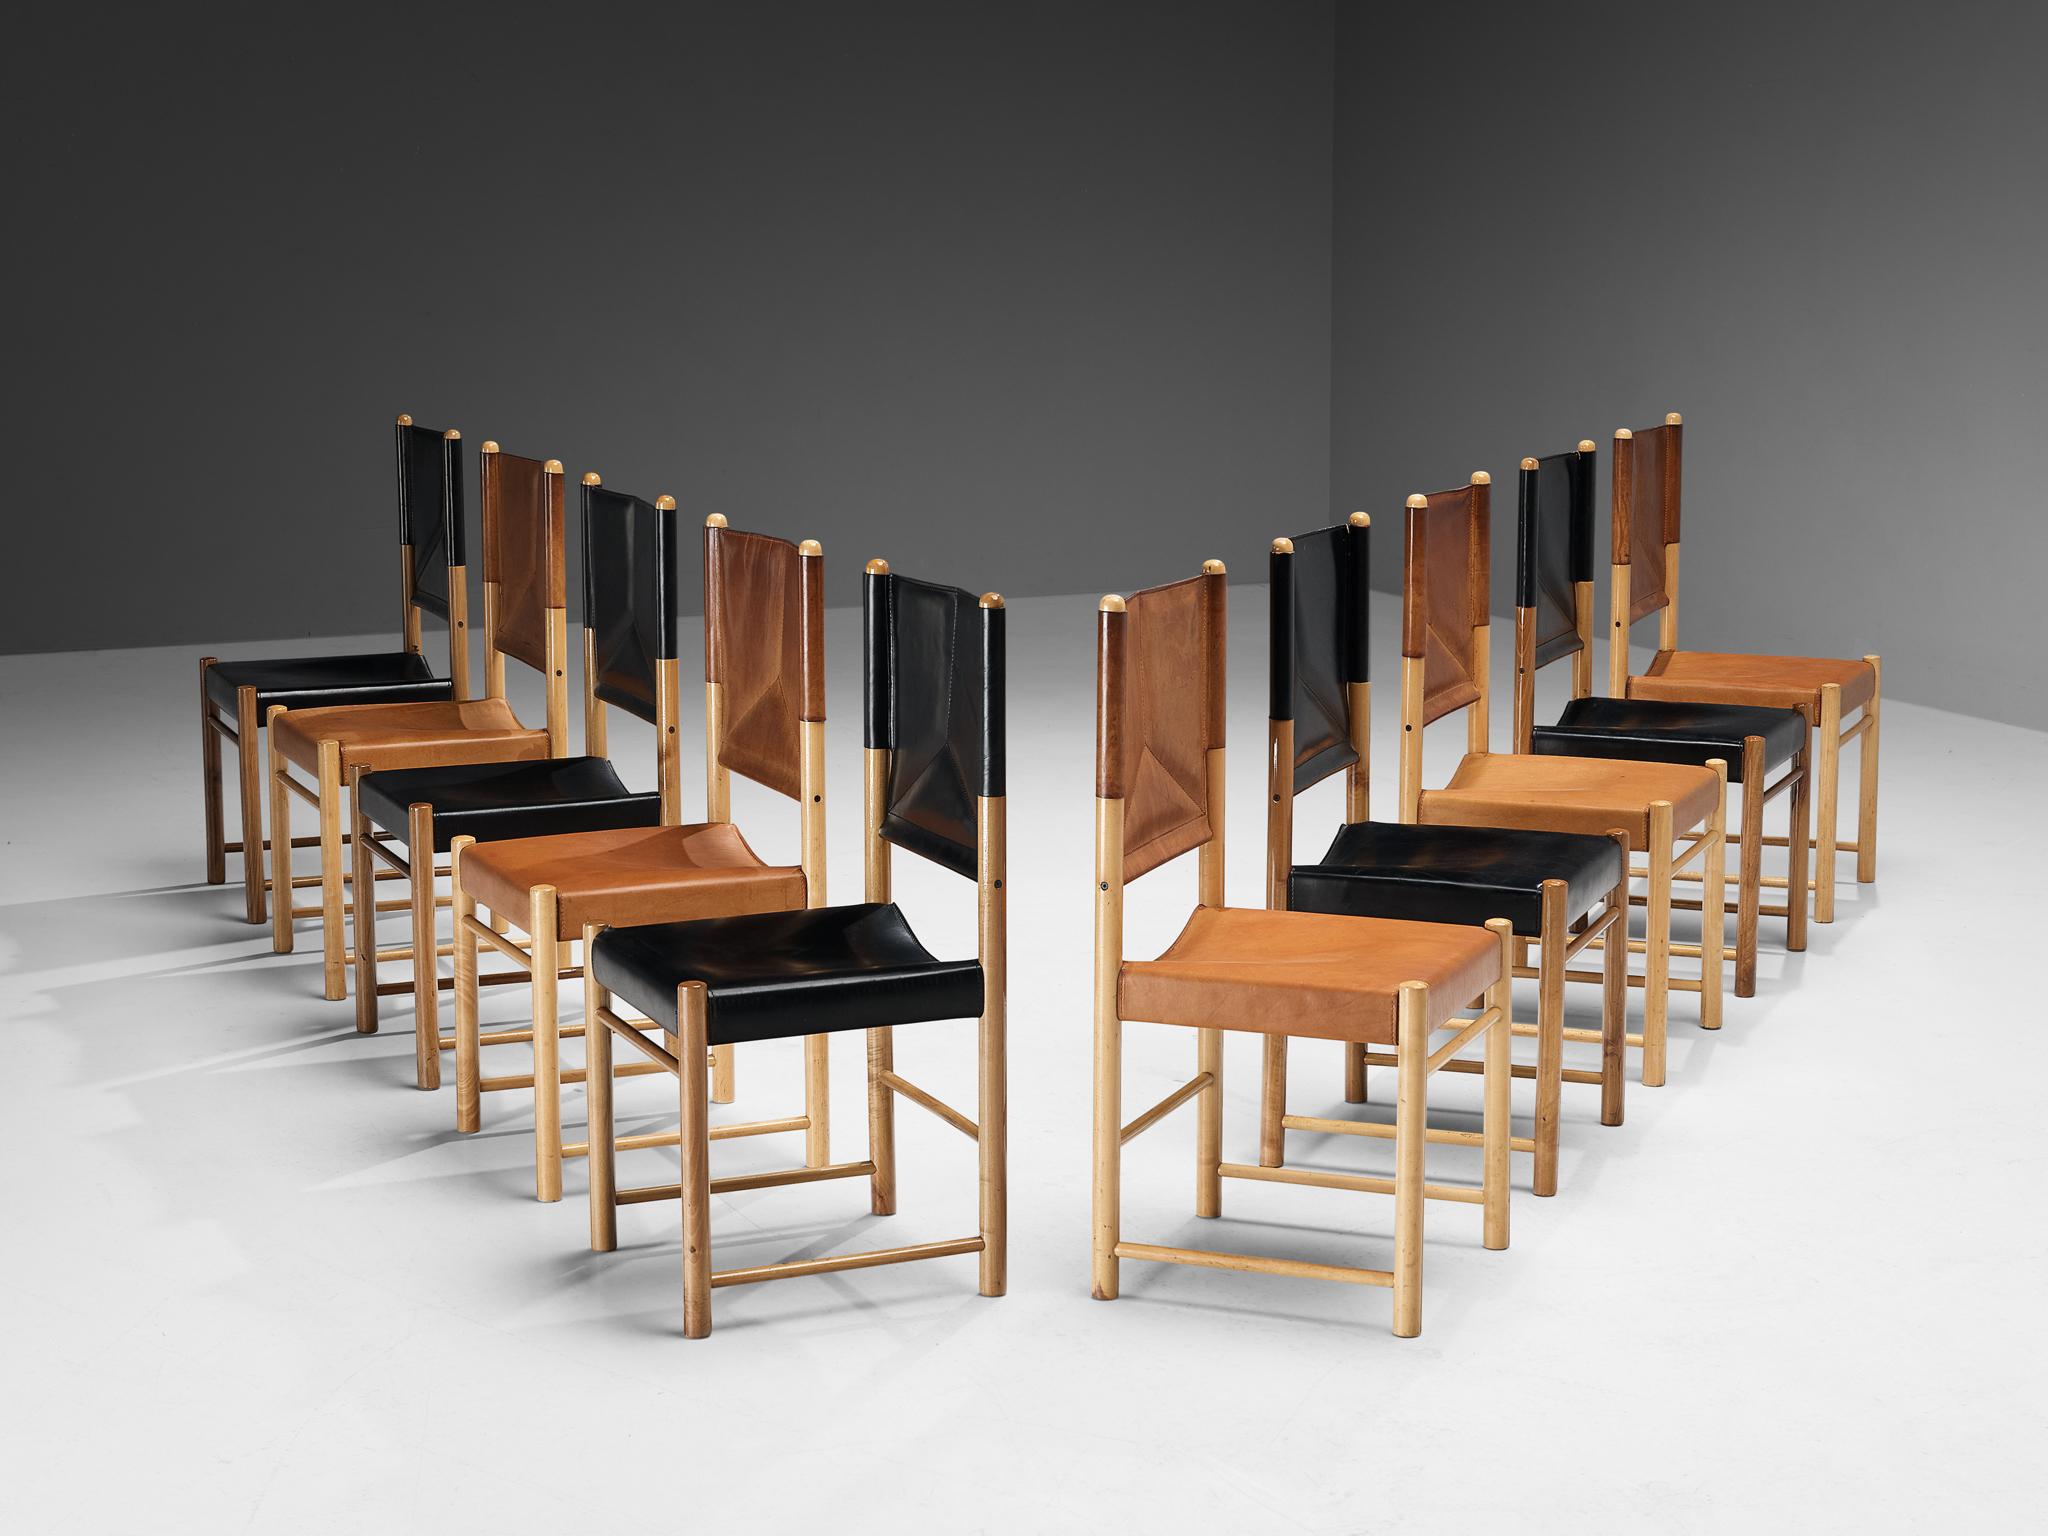 Satz von zehn Esszimmerstühlen, Buche, Leder, Italien, 1970er Jahre

Ein zartes Set von Stühlen, die gut proportioniert sind und den Essbereich auf eine kraftvolle und starke Weise aufwerten. Der Holzrahmen besteht aus zylindrischen Balken, an denen